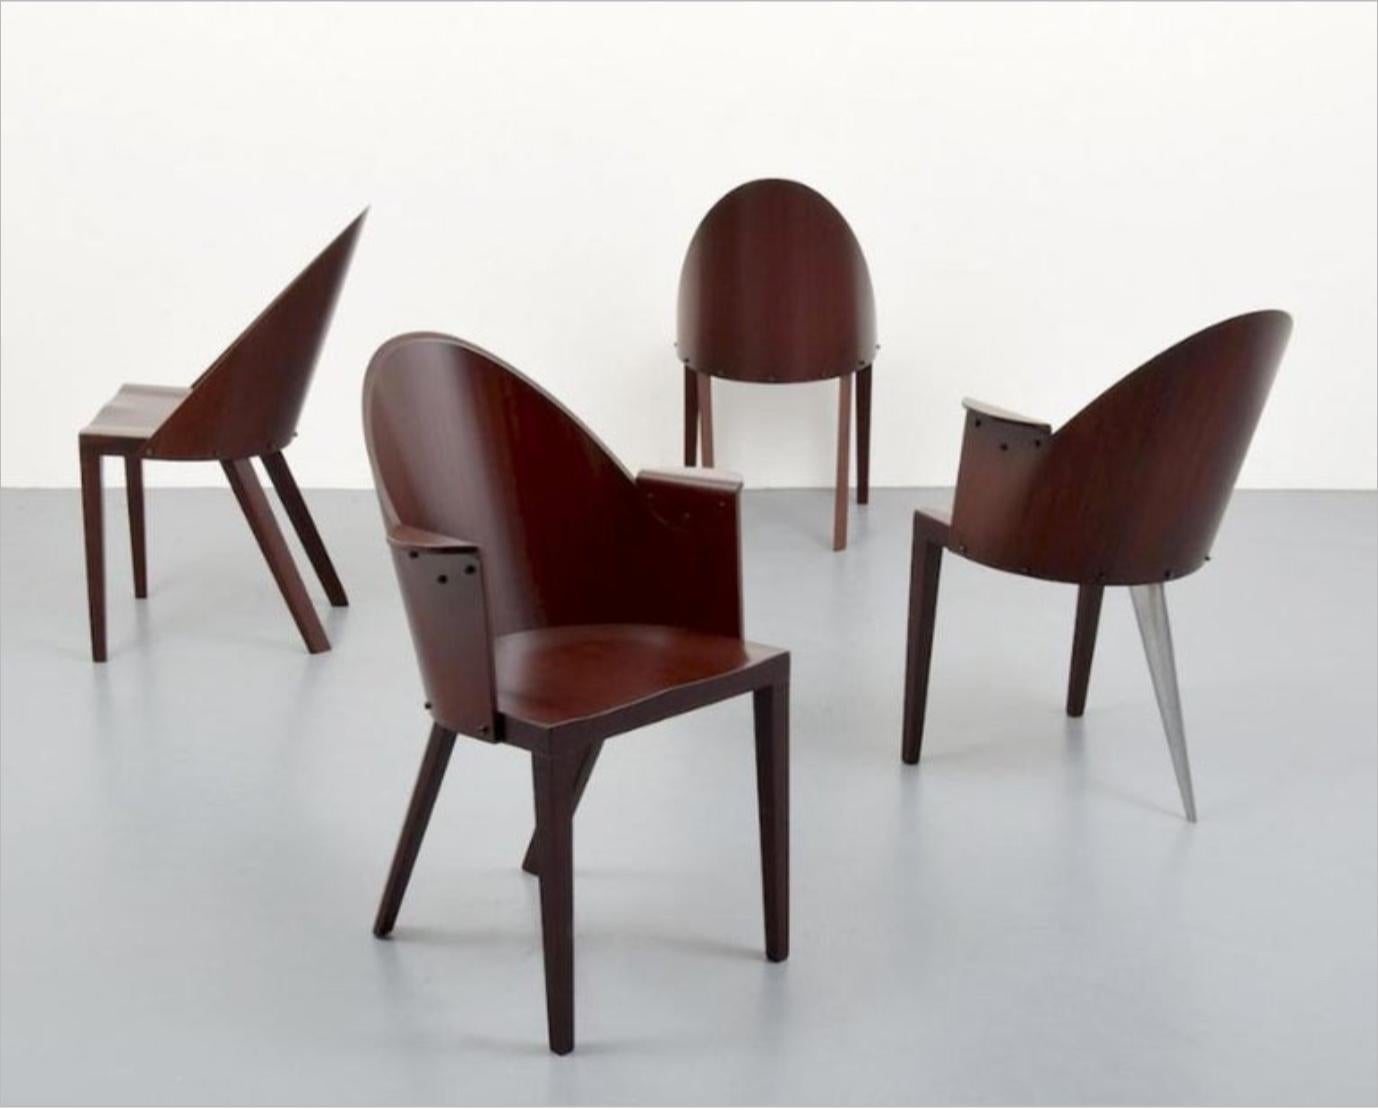 Ensemble de 4 chaises rares Philippe Starck provenant de l'hôtel Royalton, NYC.

Cet ensemble est composé de deux fauteuils et de deux chaises d'appoint. Un fauteuil est la forme à trois pieds.

Étiquettes originales.

L'hôtel Royalton est